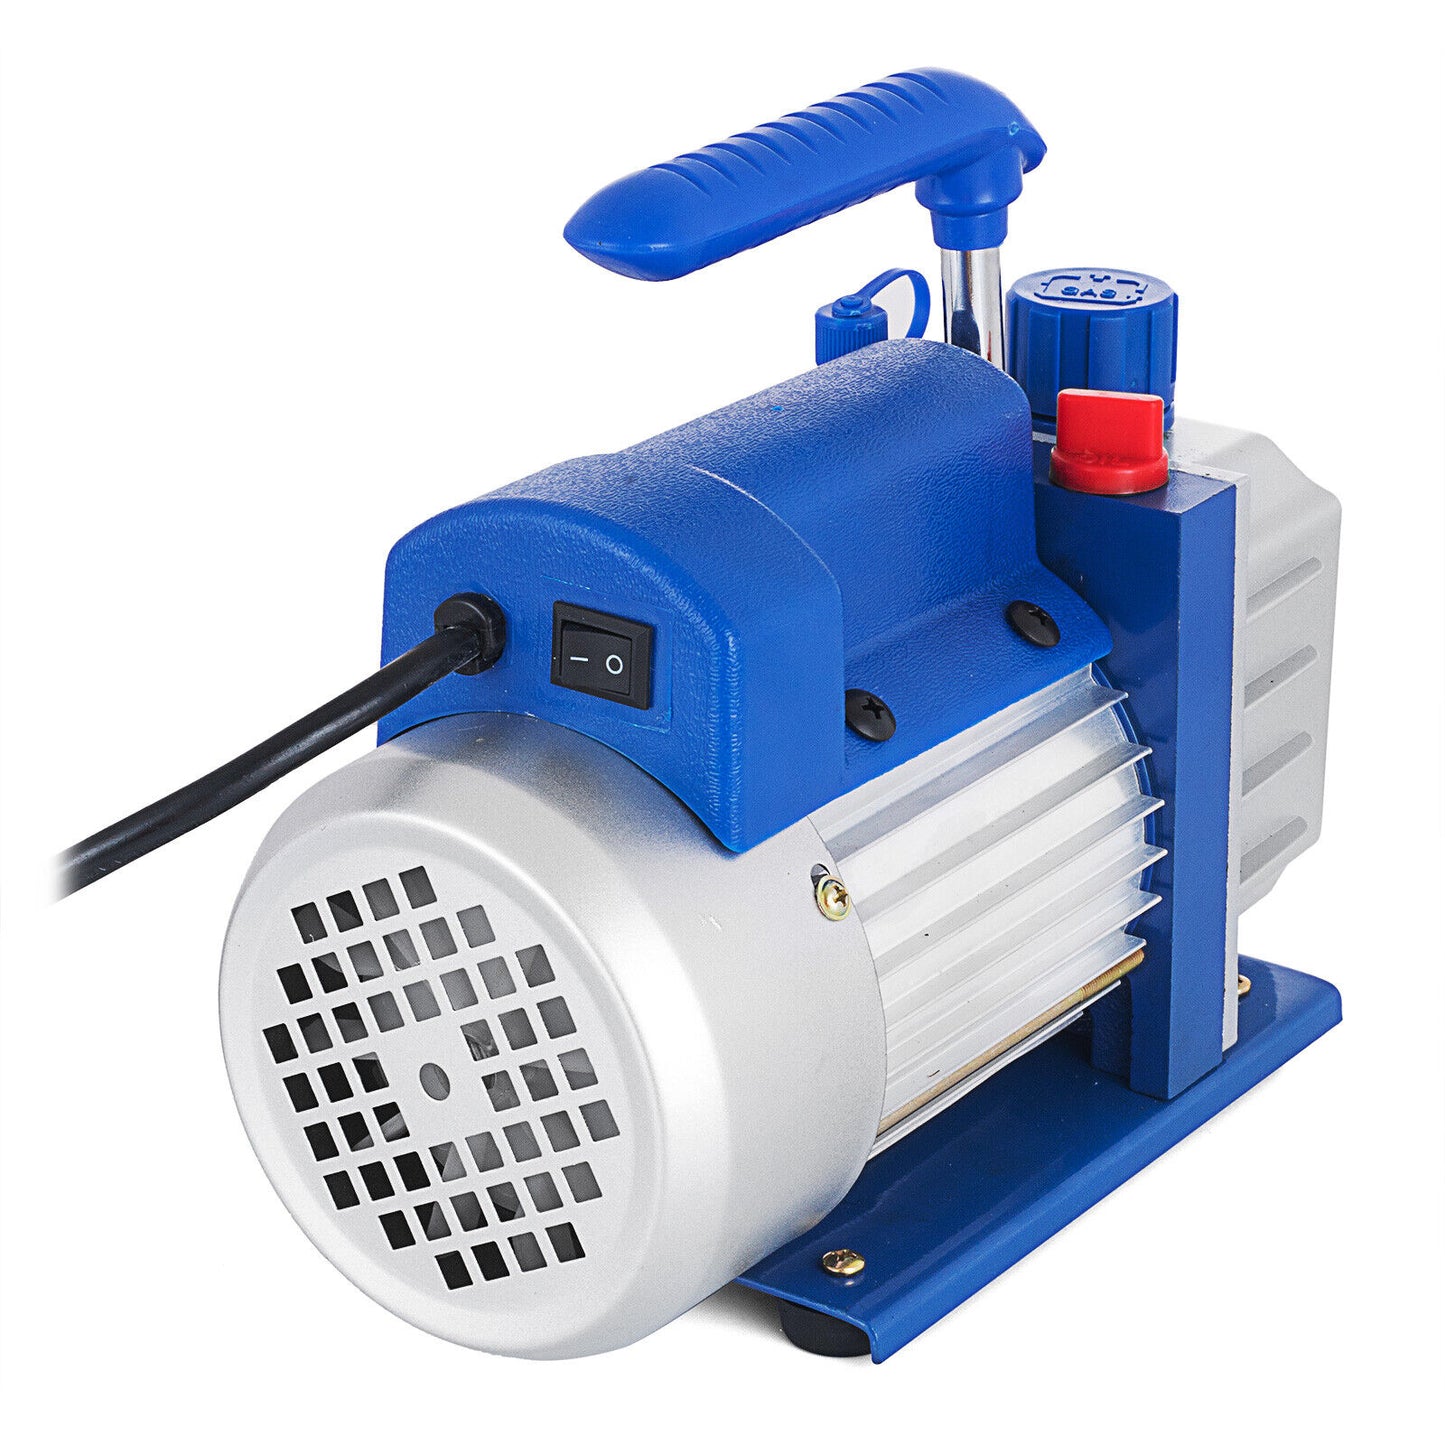 3,5CFM 1/4hp Air Vacuum Pump HVAC Refrigeration AC Manifold Gauge Set R134a Kit